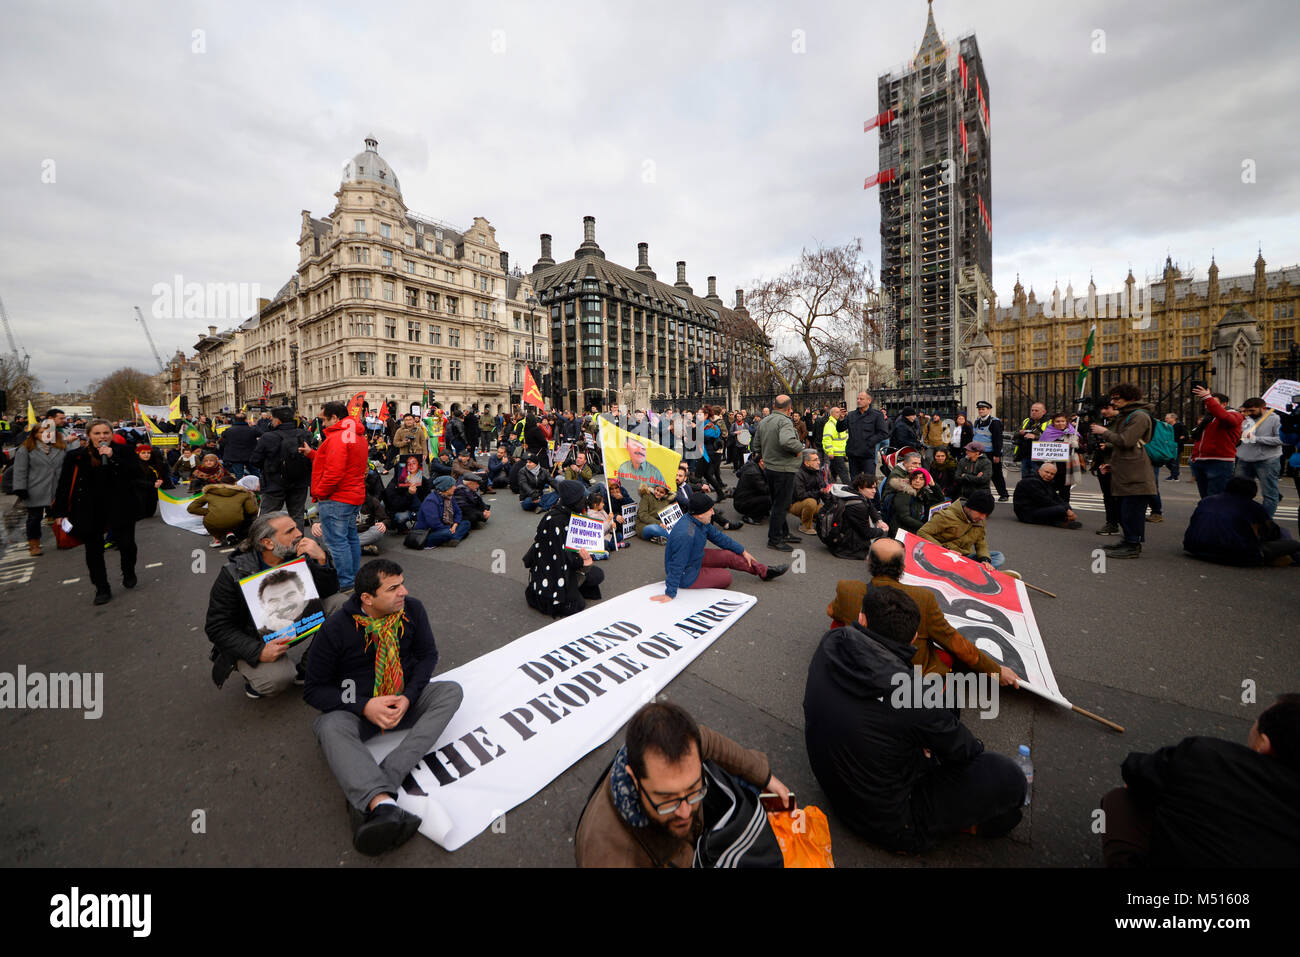 Asseyez-vous pour protester devant le Parlement. Manifestation contre les crimes de guerre turcs présumés à Afrin, une ville kurde en Syrie. Londres, Royaume-Uni. Défendez le manifestant d'Afrin Banque D'Images